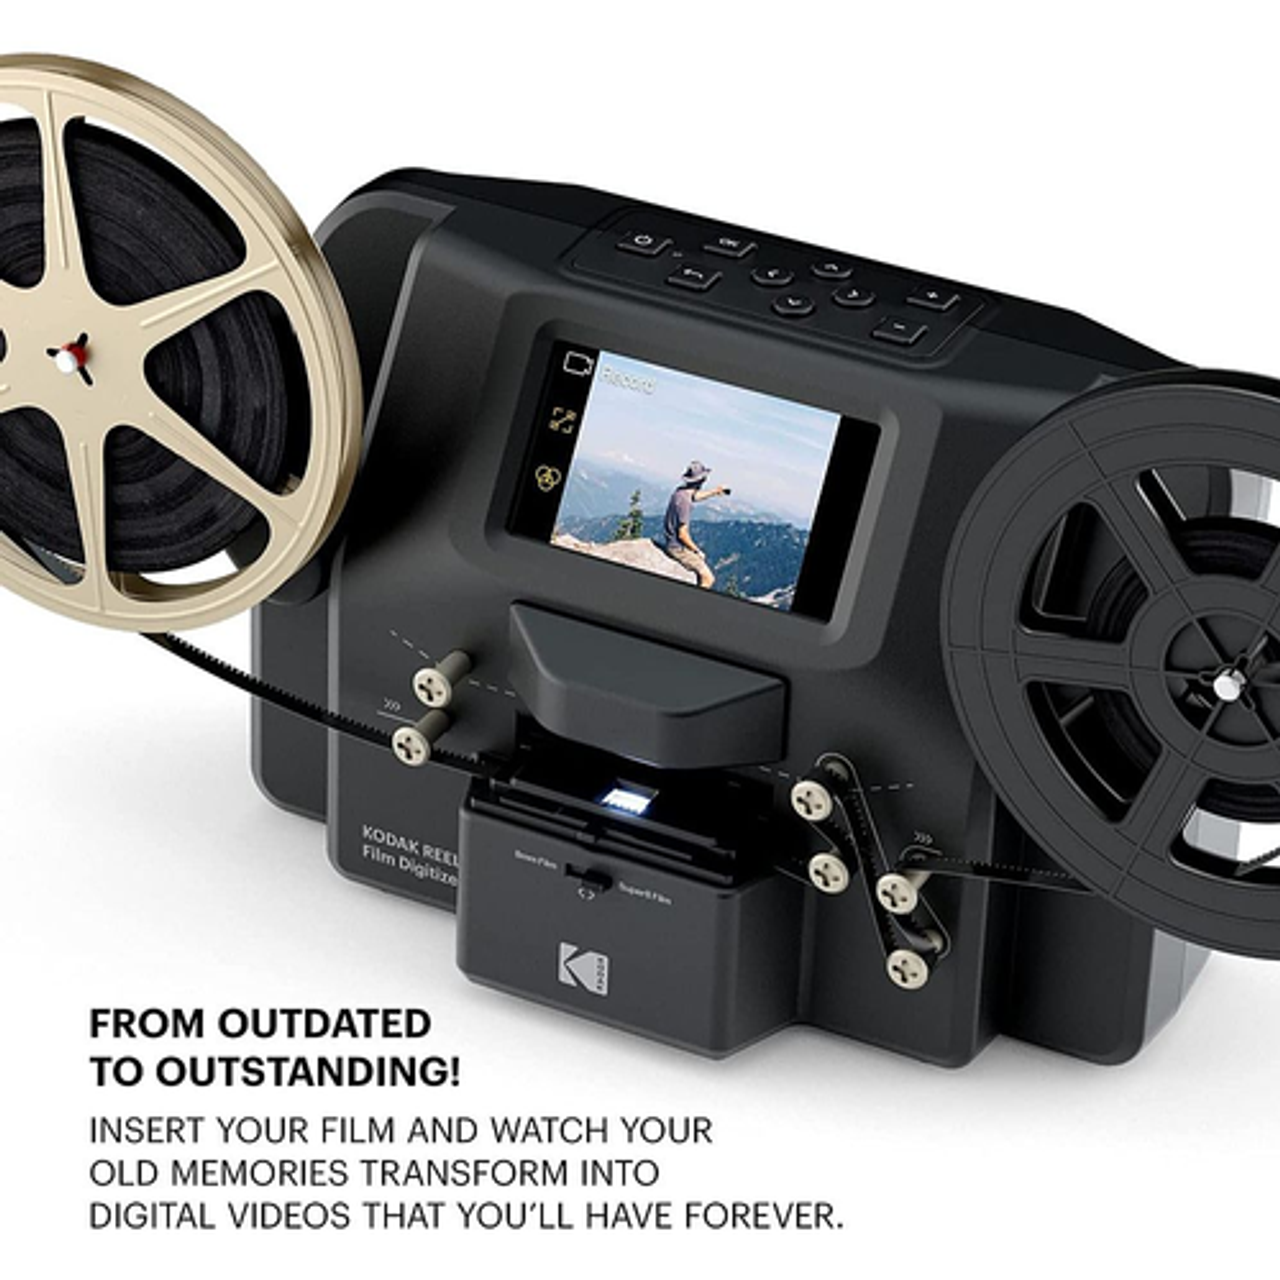 Kodak - REELS Portable Scanner, Film Digitizer, Photo Scanner & Slide Viewer, 8mm & Super 8 Films Converter - Black